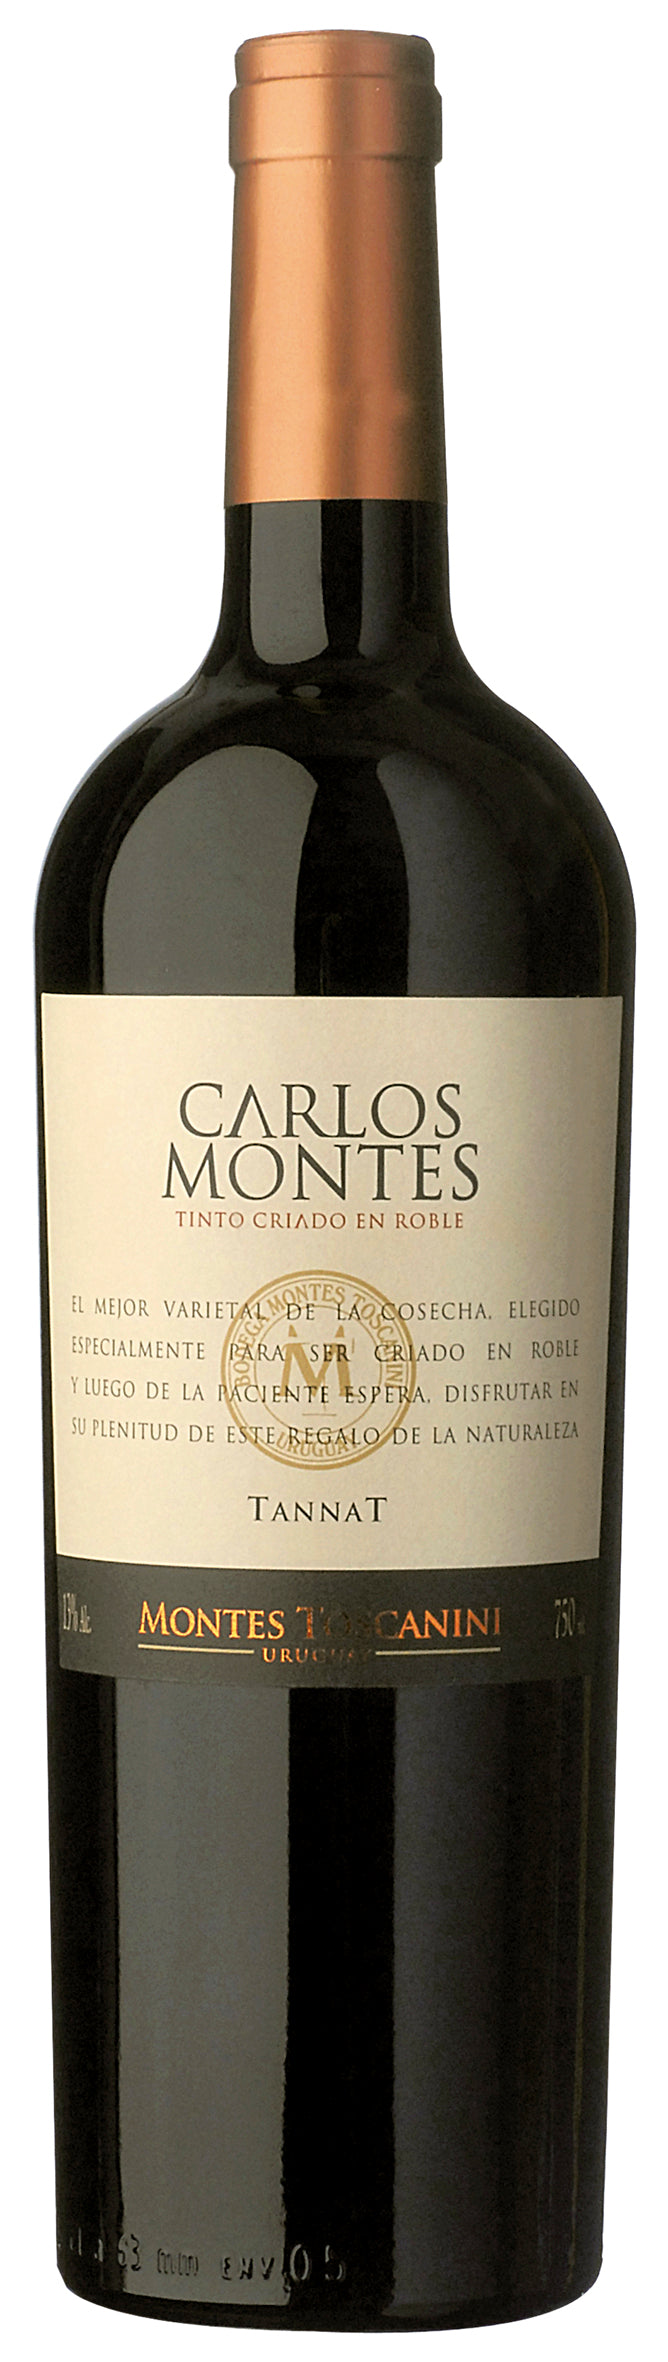 Vino tinto Montes Toscanini Carlos Montes Tannat 750 ml